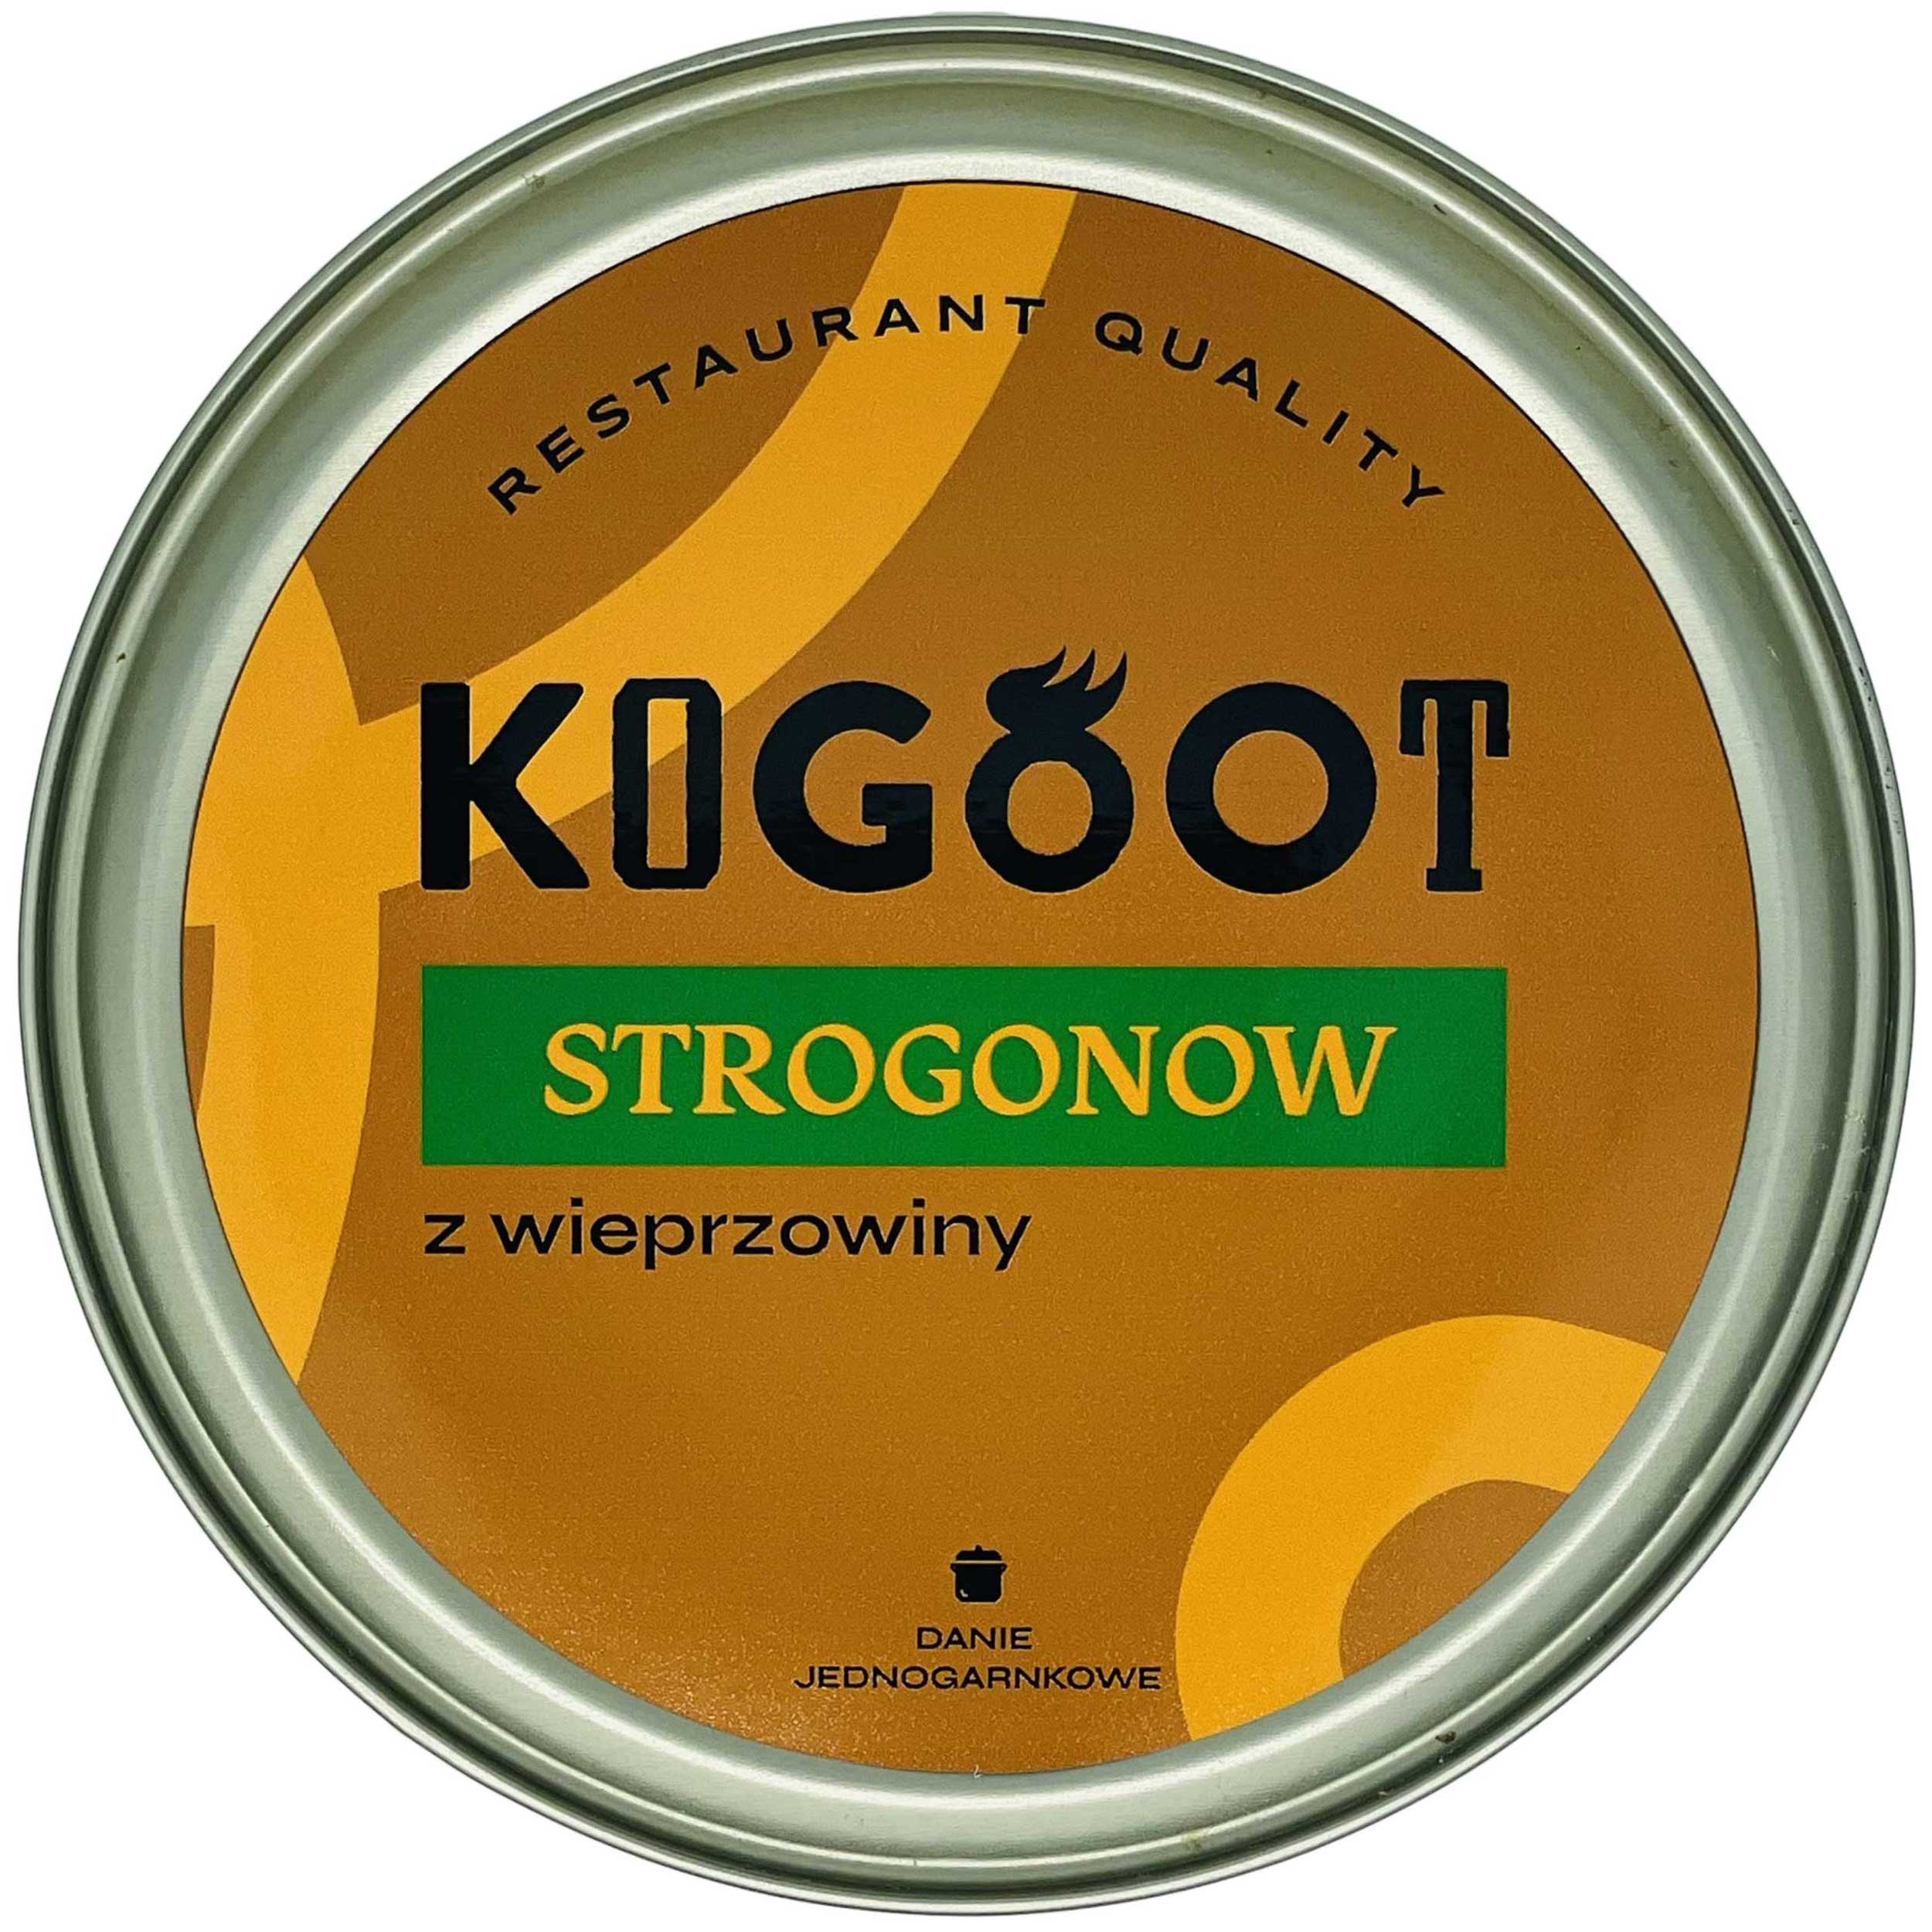 Żywność konserwowana Kogoot - Strogonow 500 g